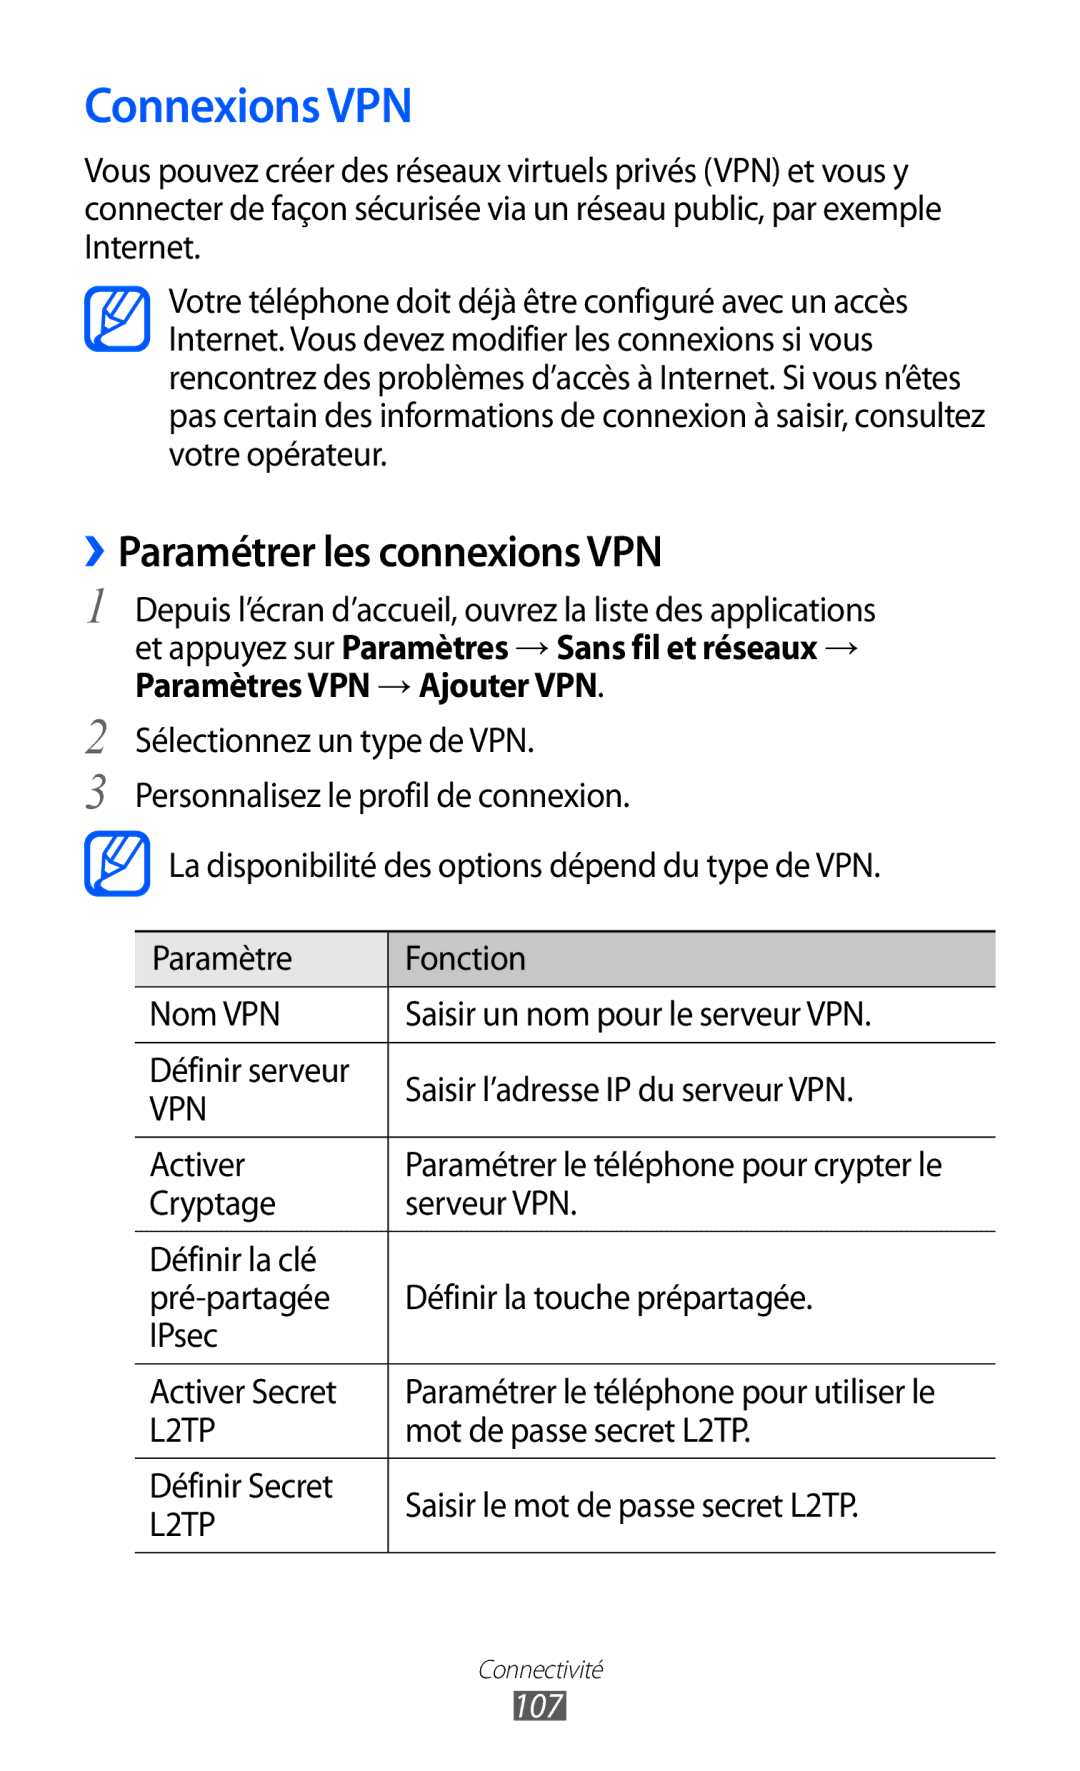 Samsung GT2S6500ZYDMTL, GT-S6500ZYDBGL, GT-S6500HADBGL, GT-S6500ZYDMTL Connexions VPN, ››Paramétrer les connexions VPN, 107 